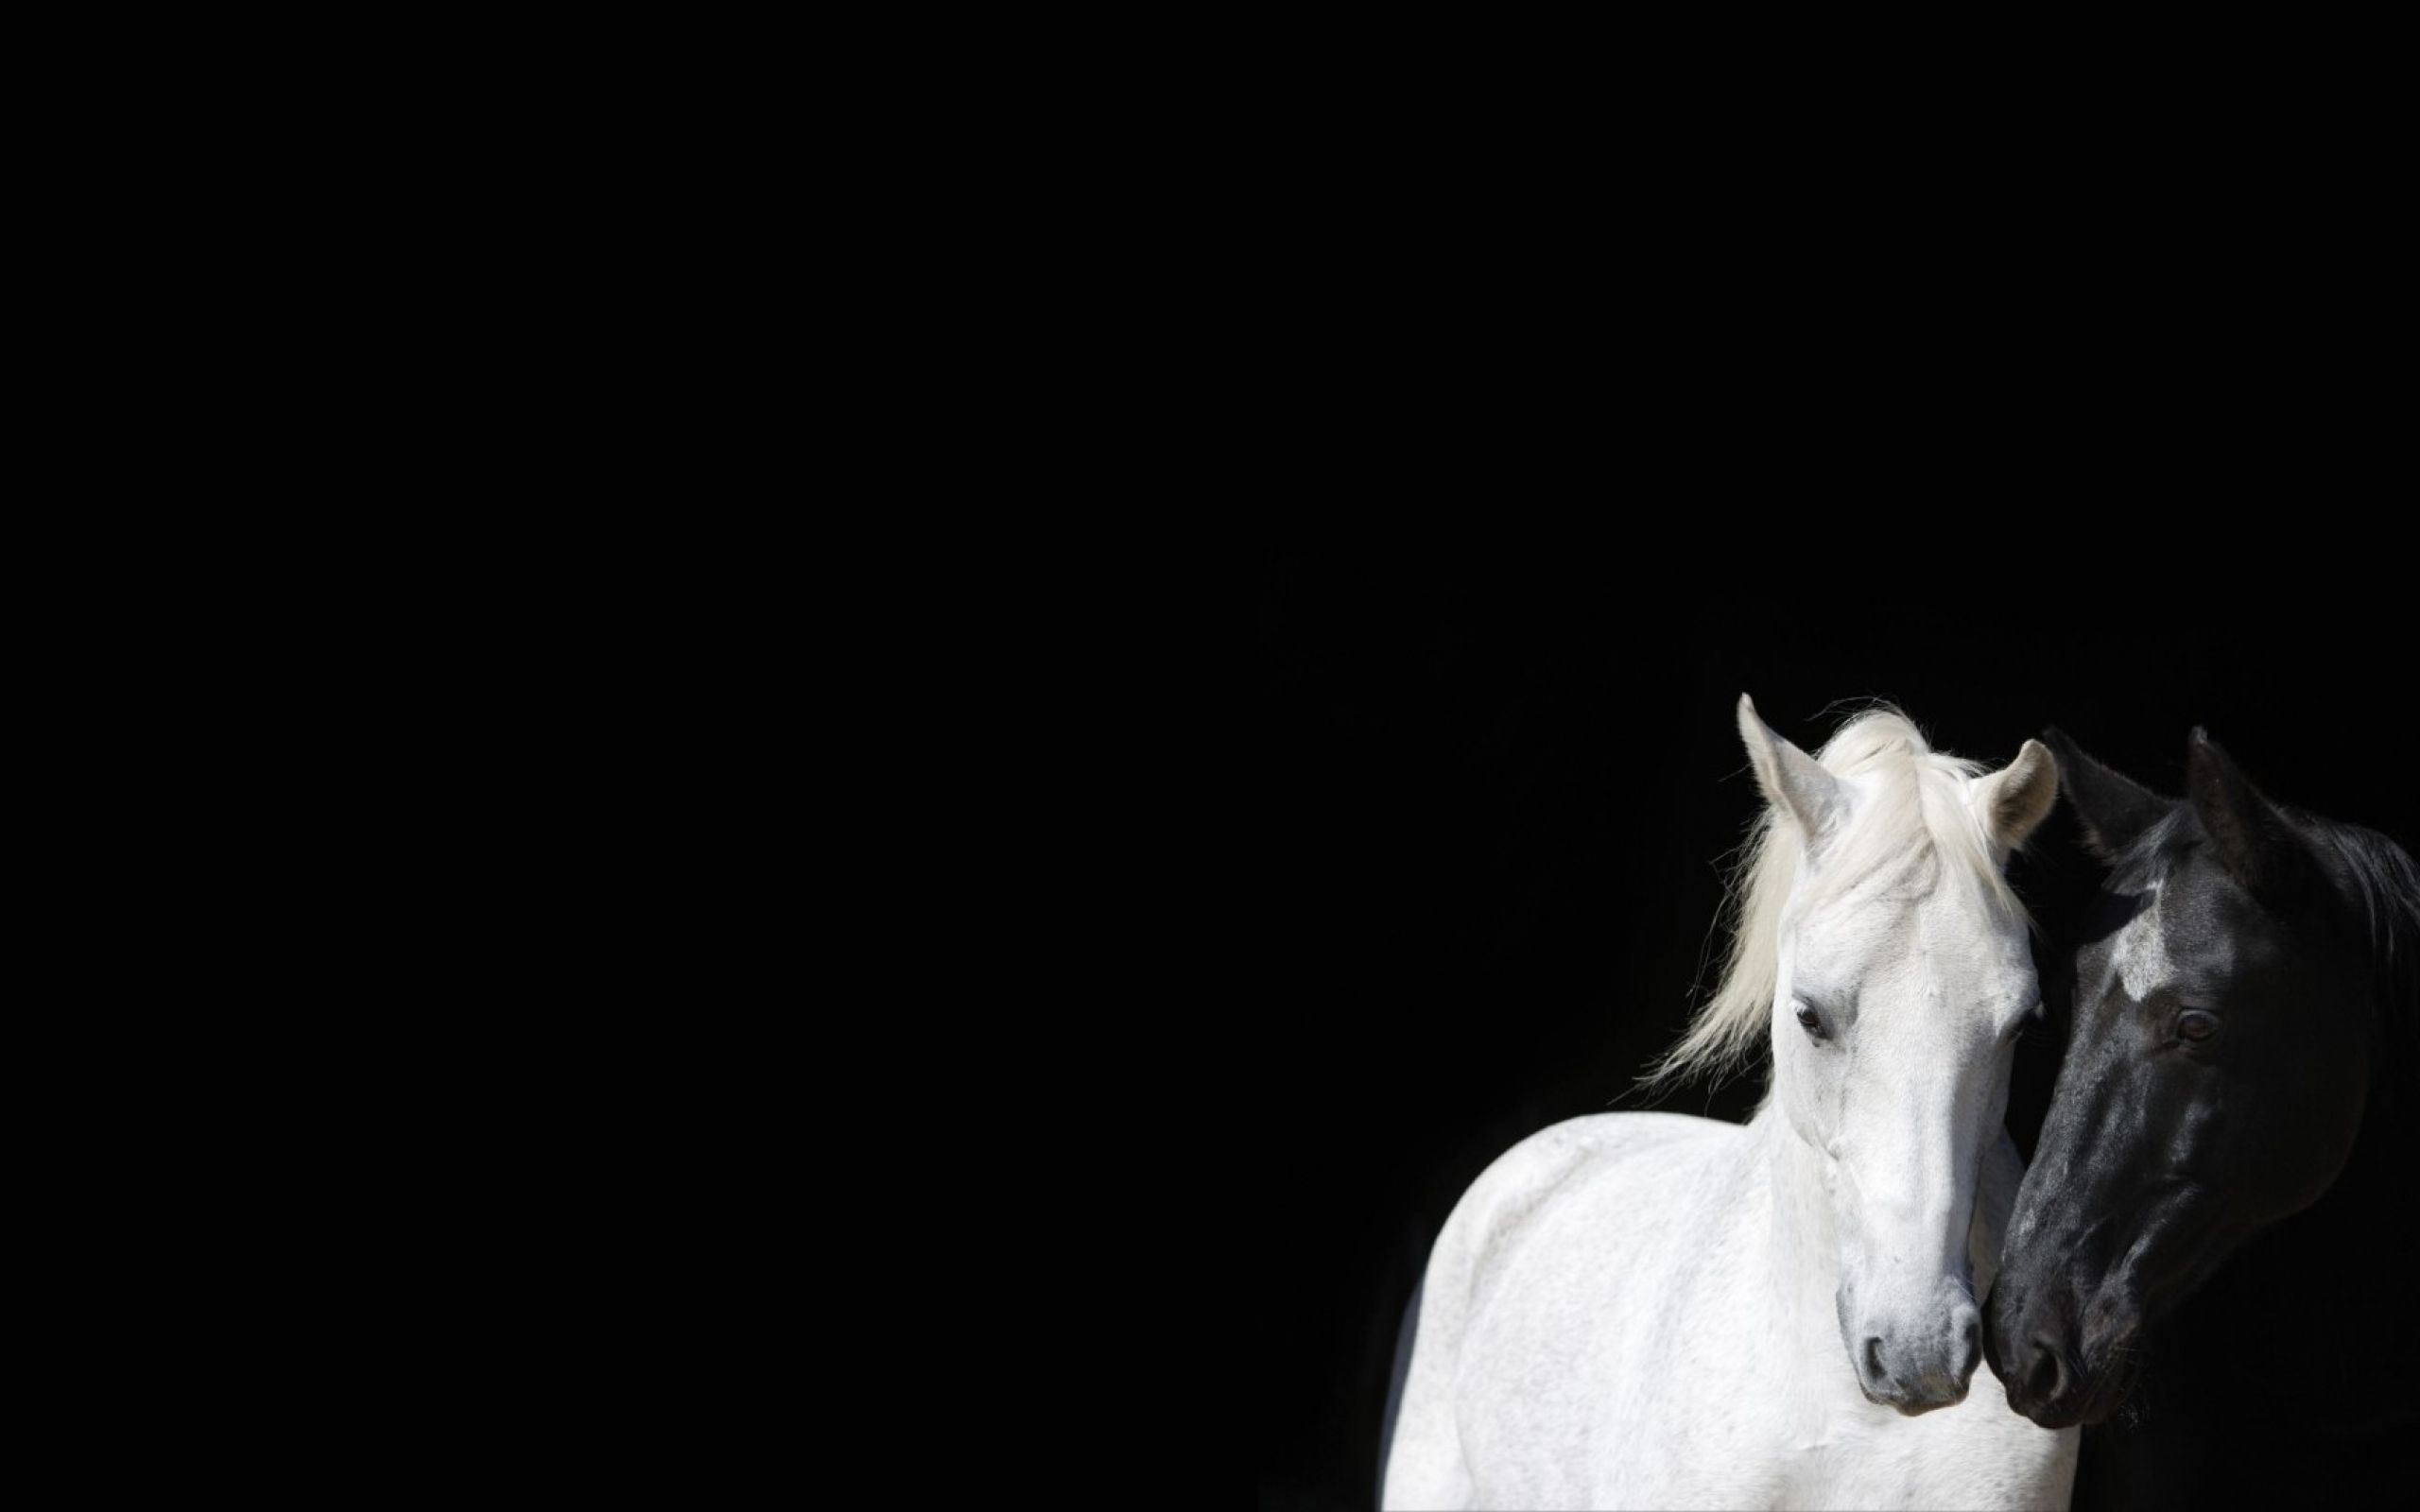 Black and White Horse Wallpaper. Horse wallpaper, Horses, White horses